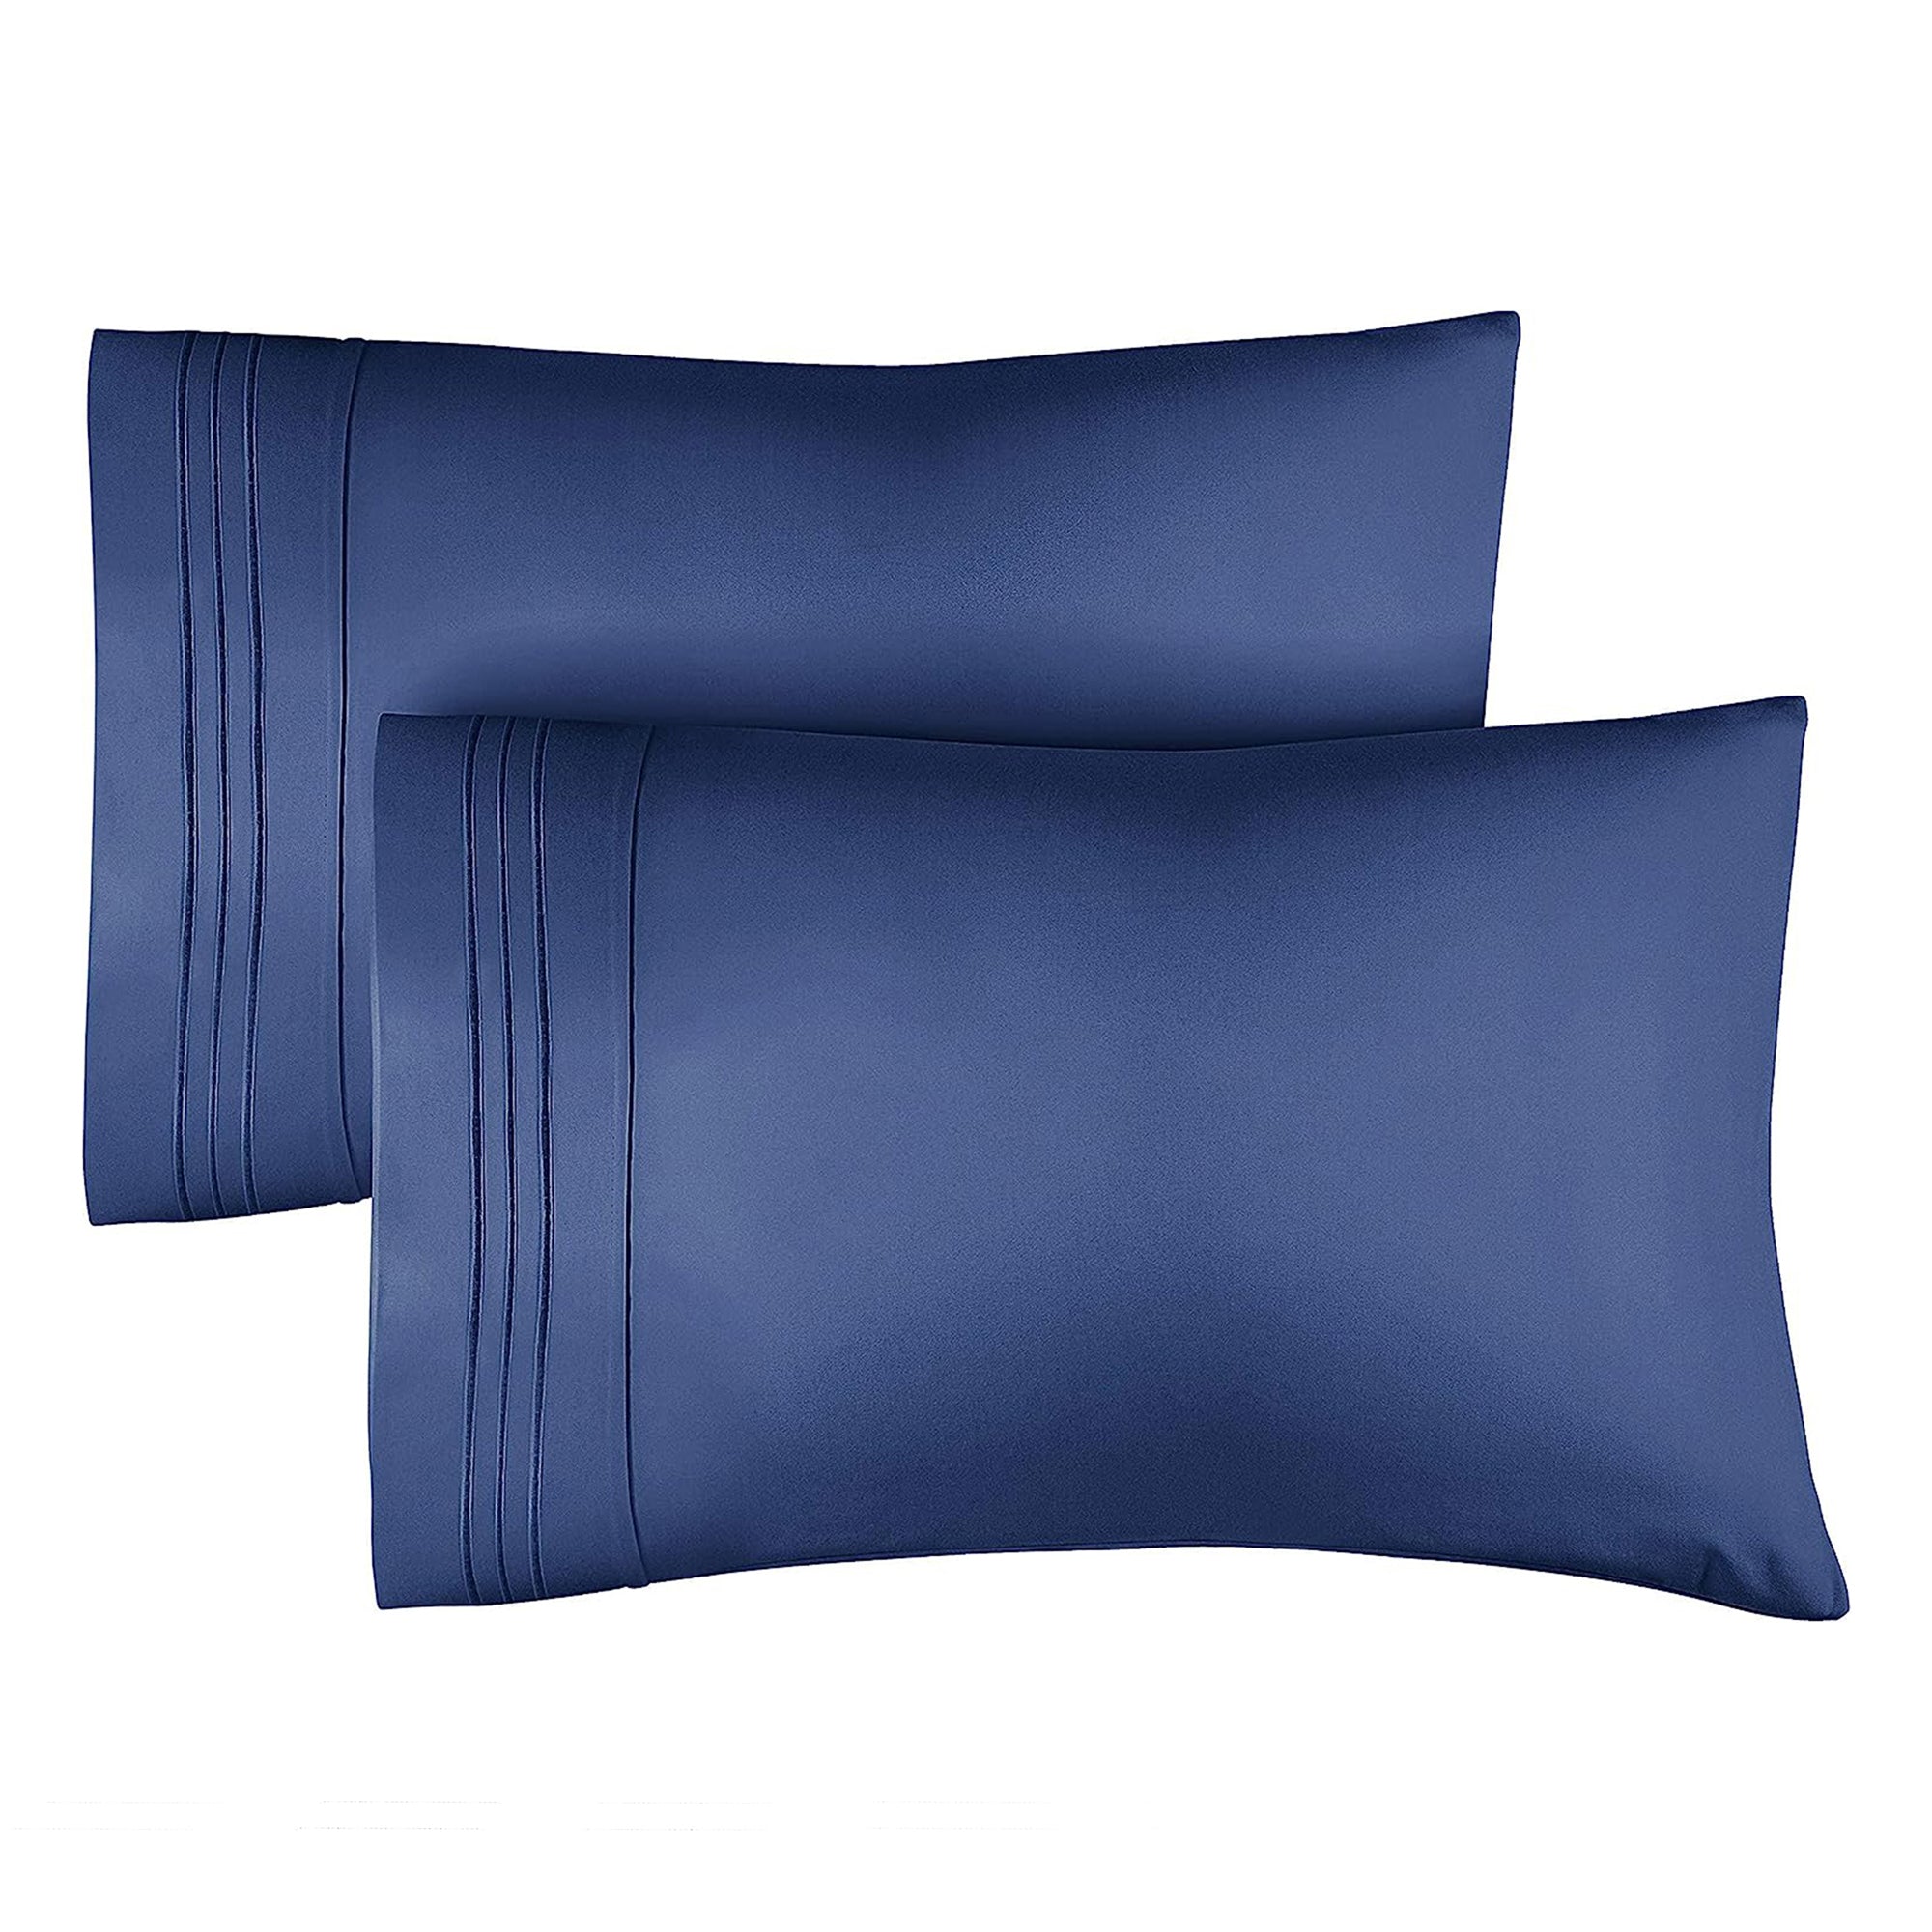 2 Pillowcase Set - Navy Blue